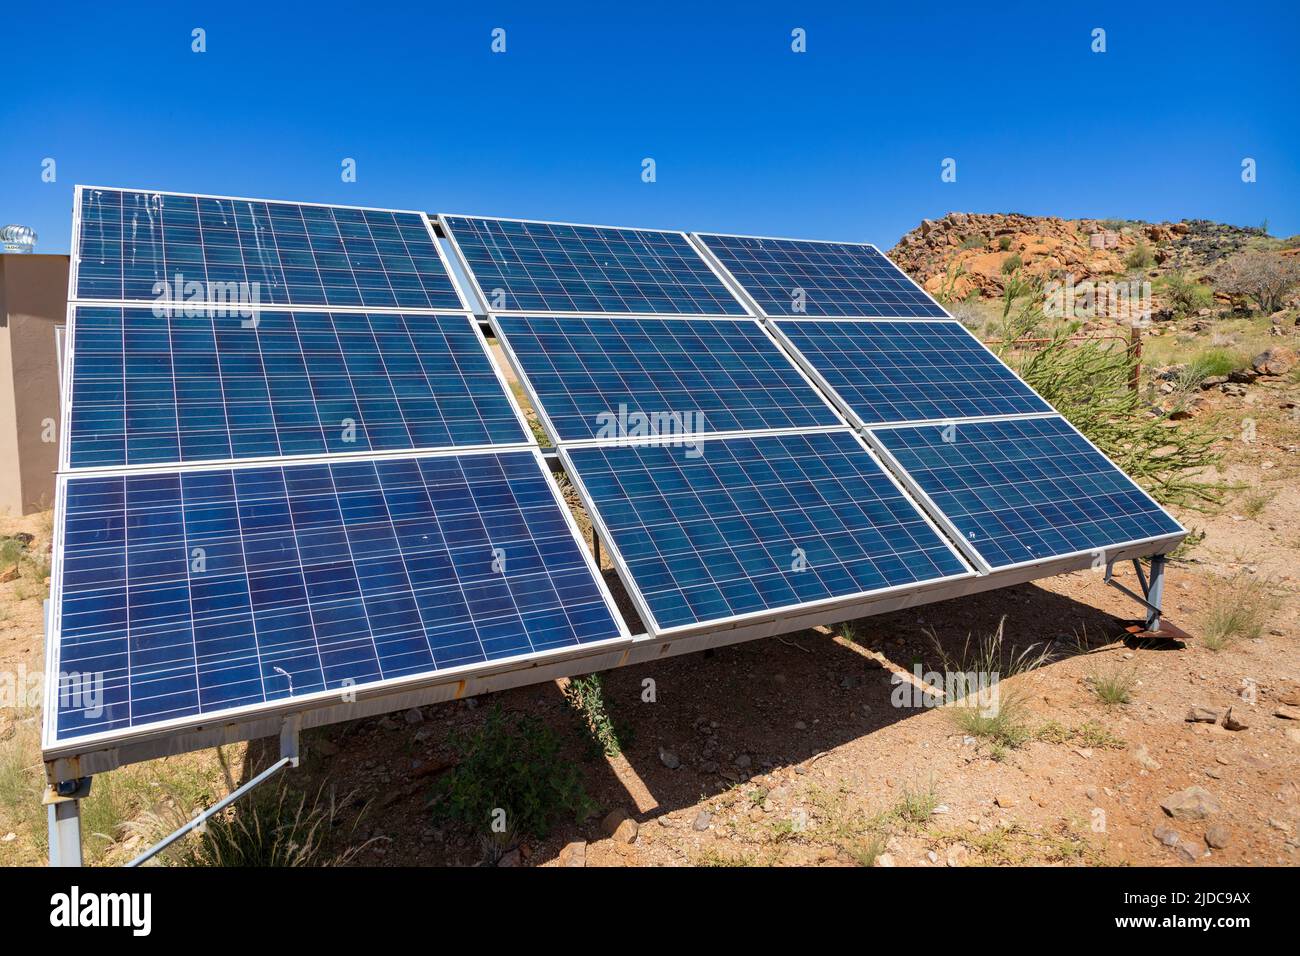 Aufstellung von neun Solarmodulen auf einem eigens angefertigten Stand an einem abgelegenen und halbtrockenen Standort. Keine Wolken am Himmel. Stockfoto